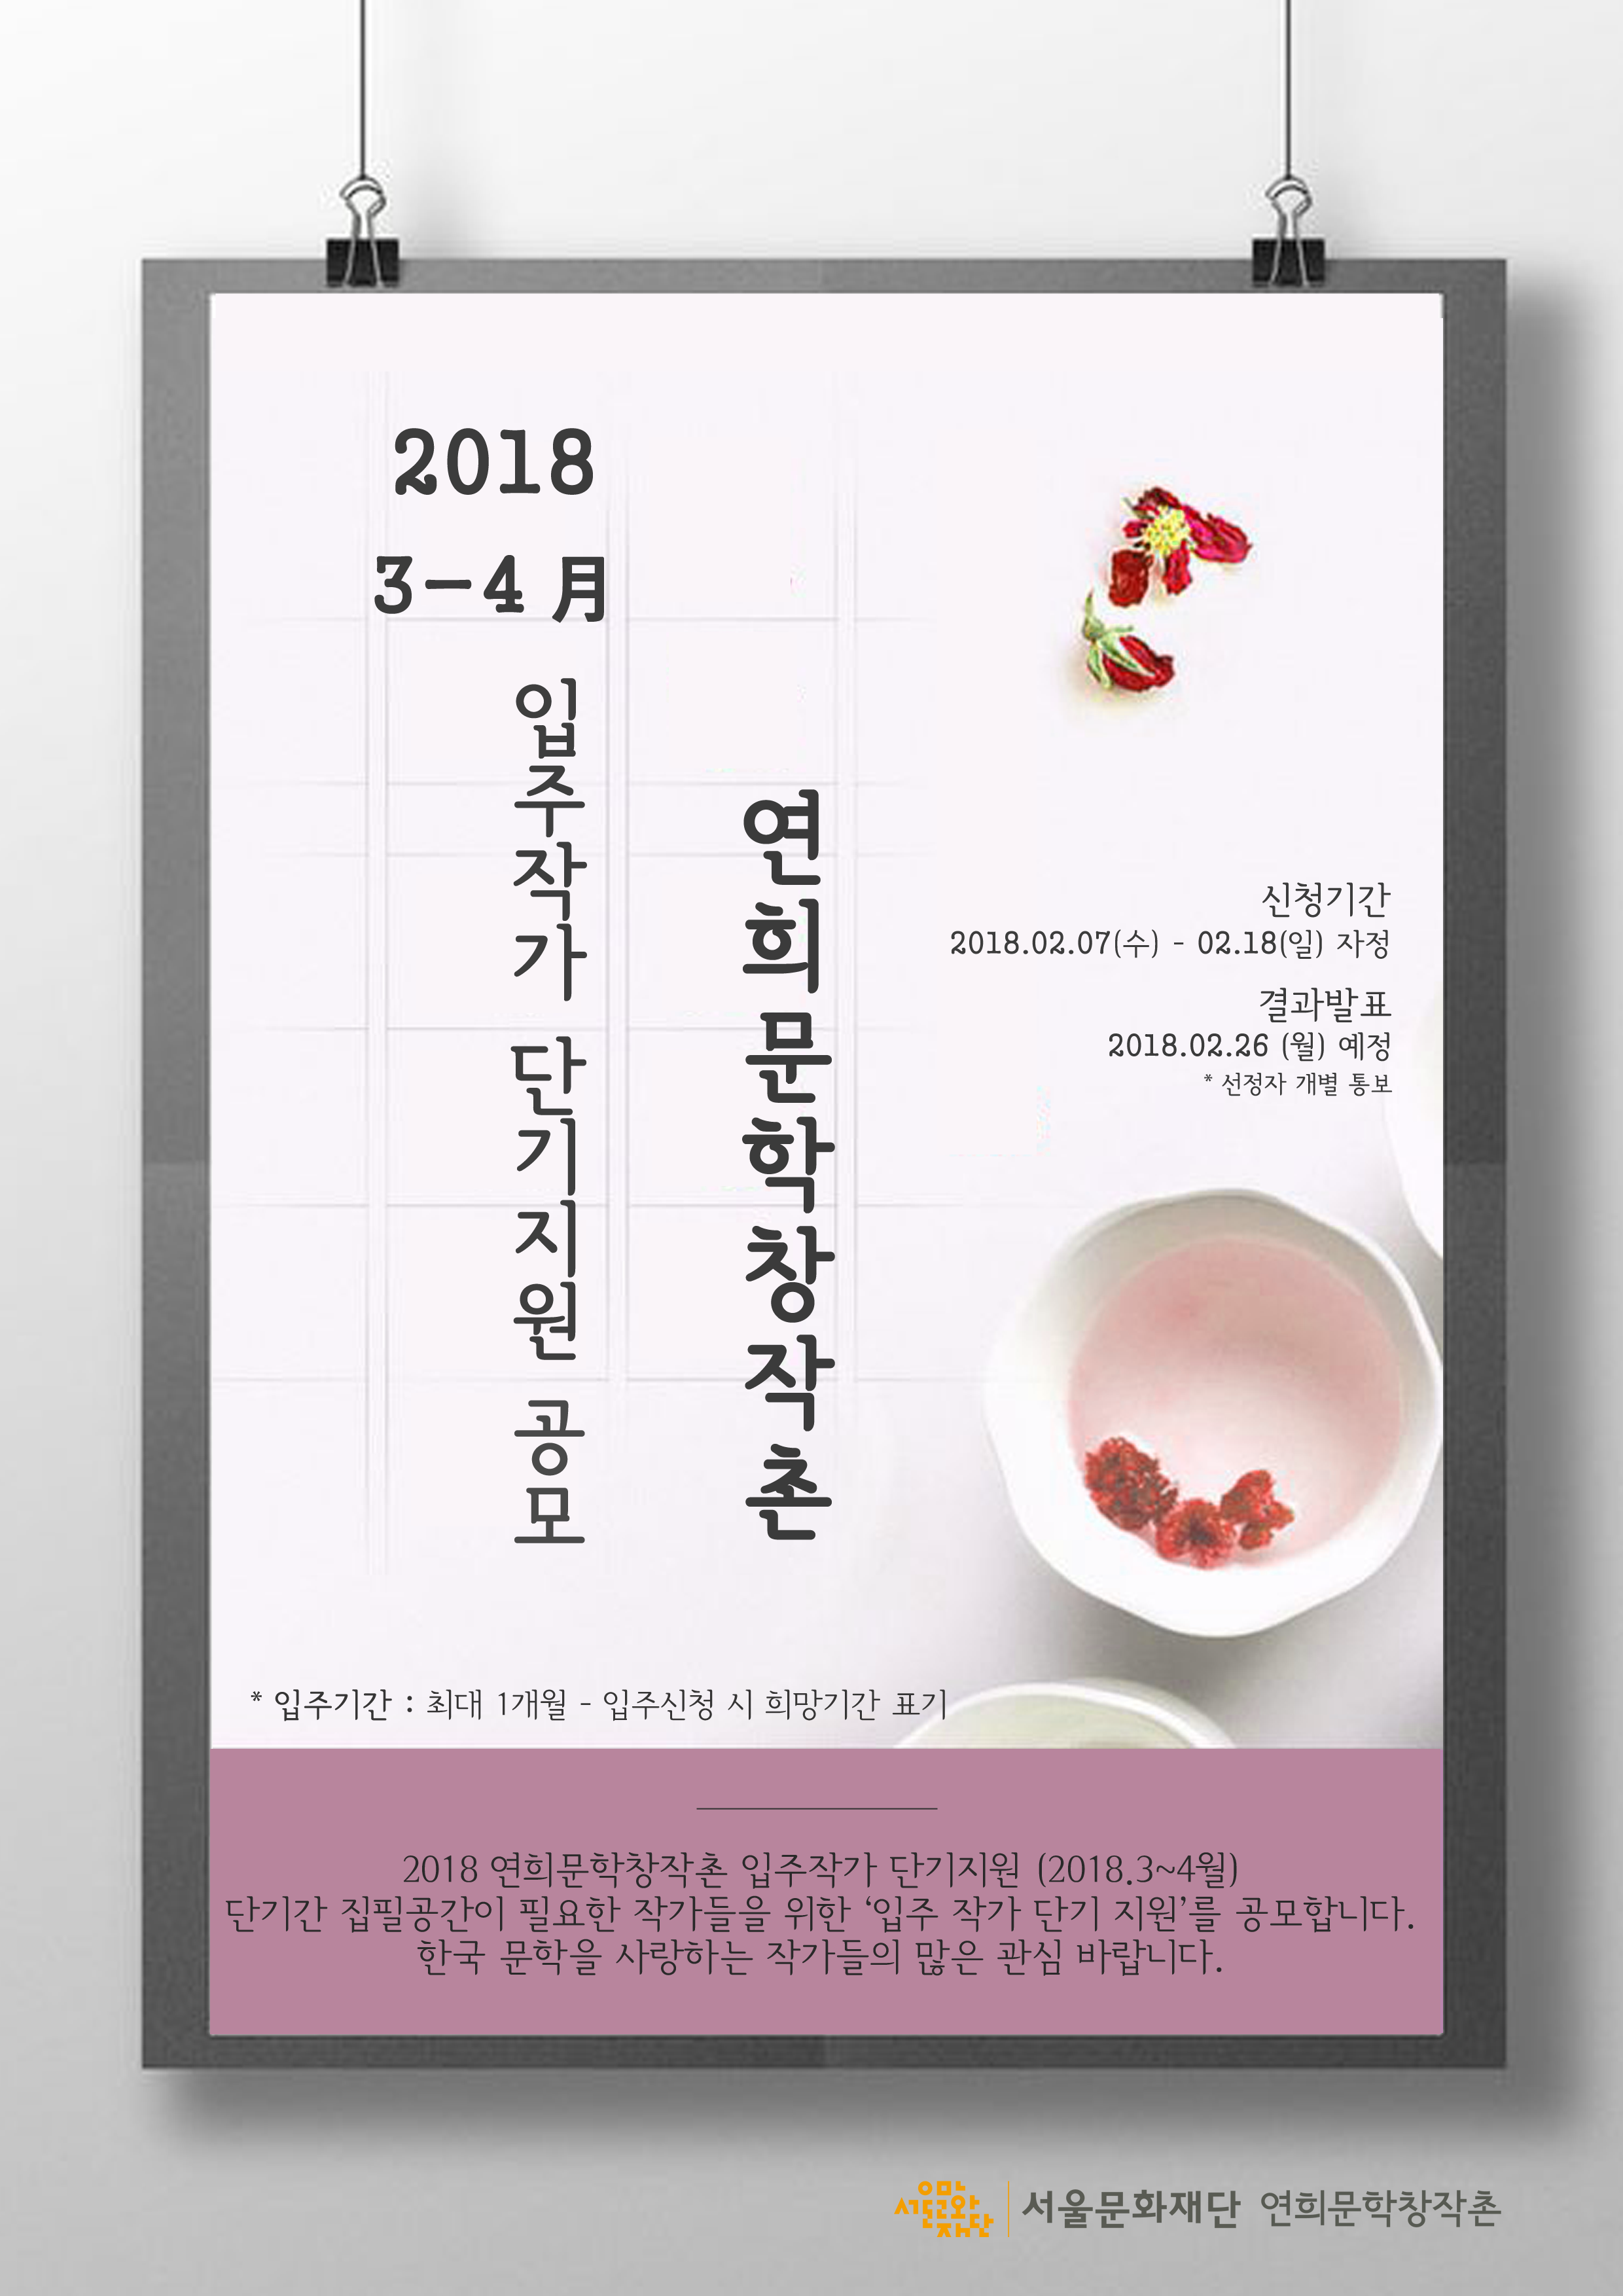 2018 연희문학창작촌 단기 수시입주(3~4월)